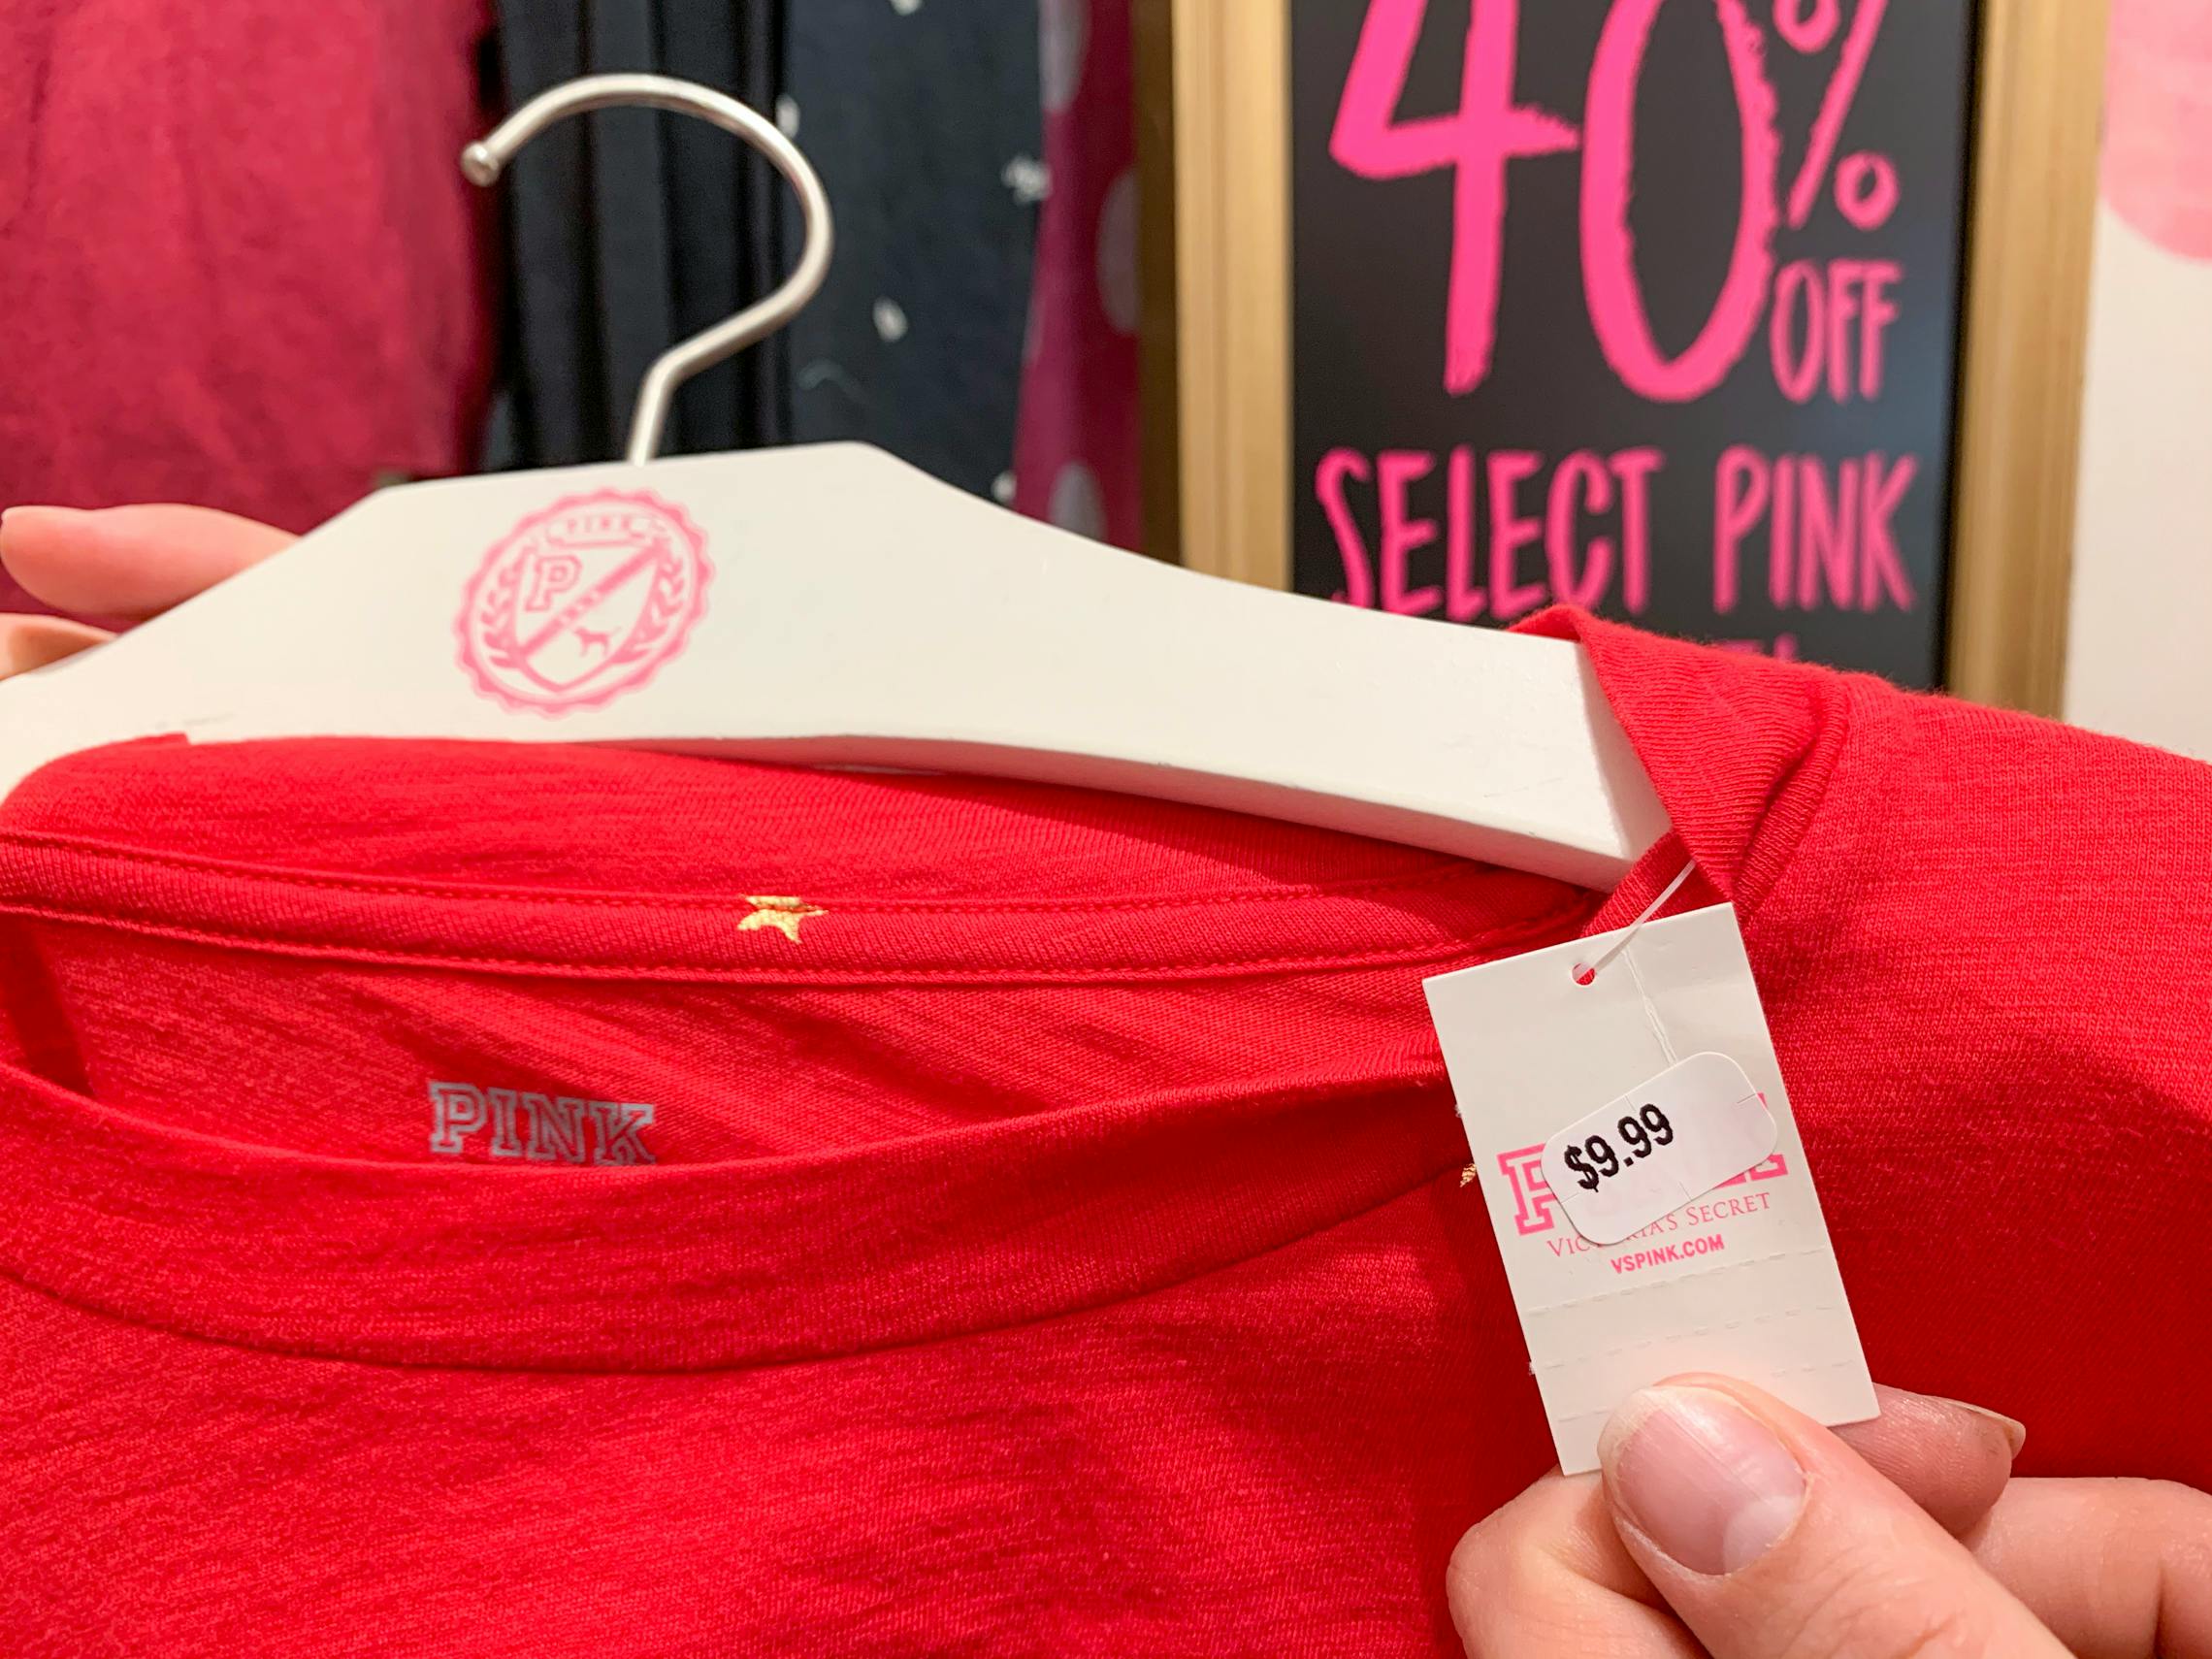 plus size victoria's secret pink apparel